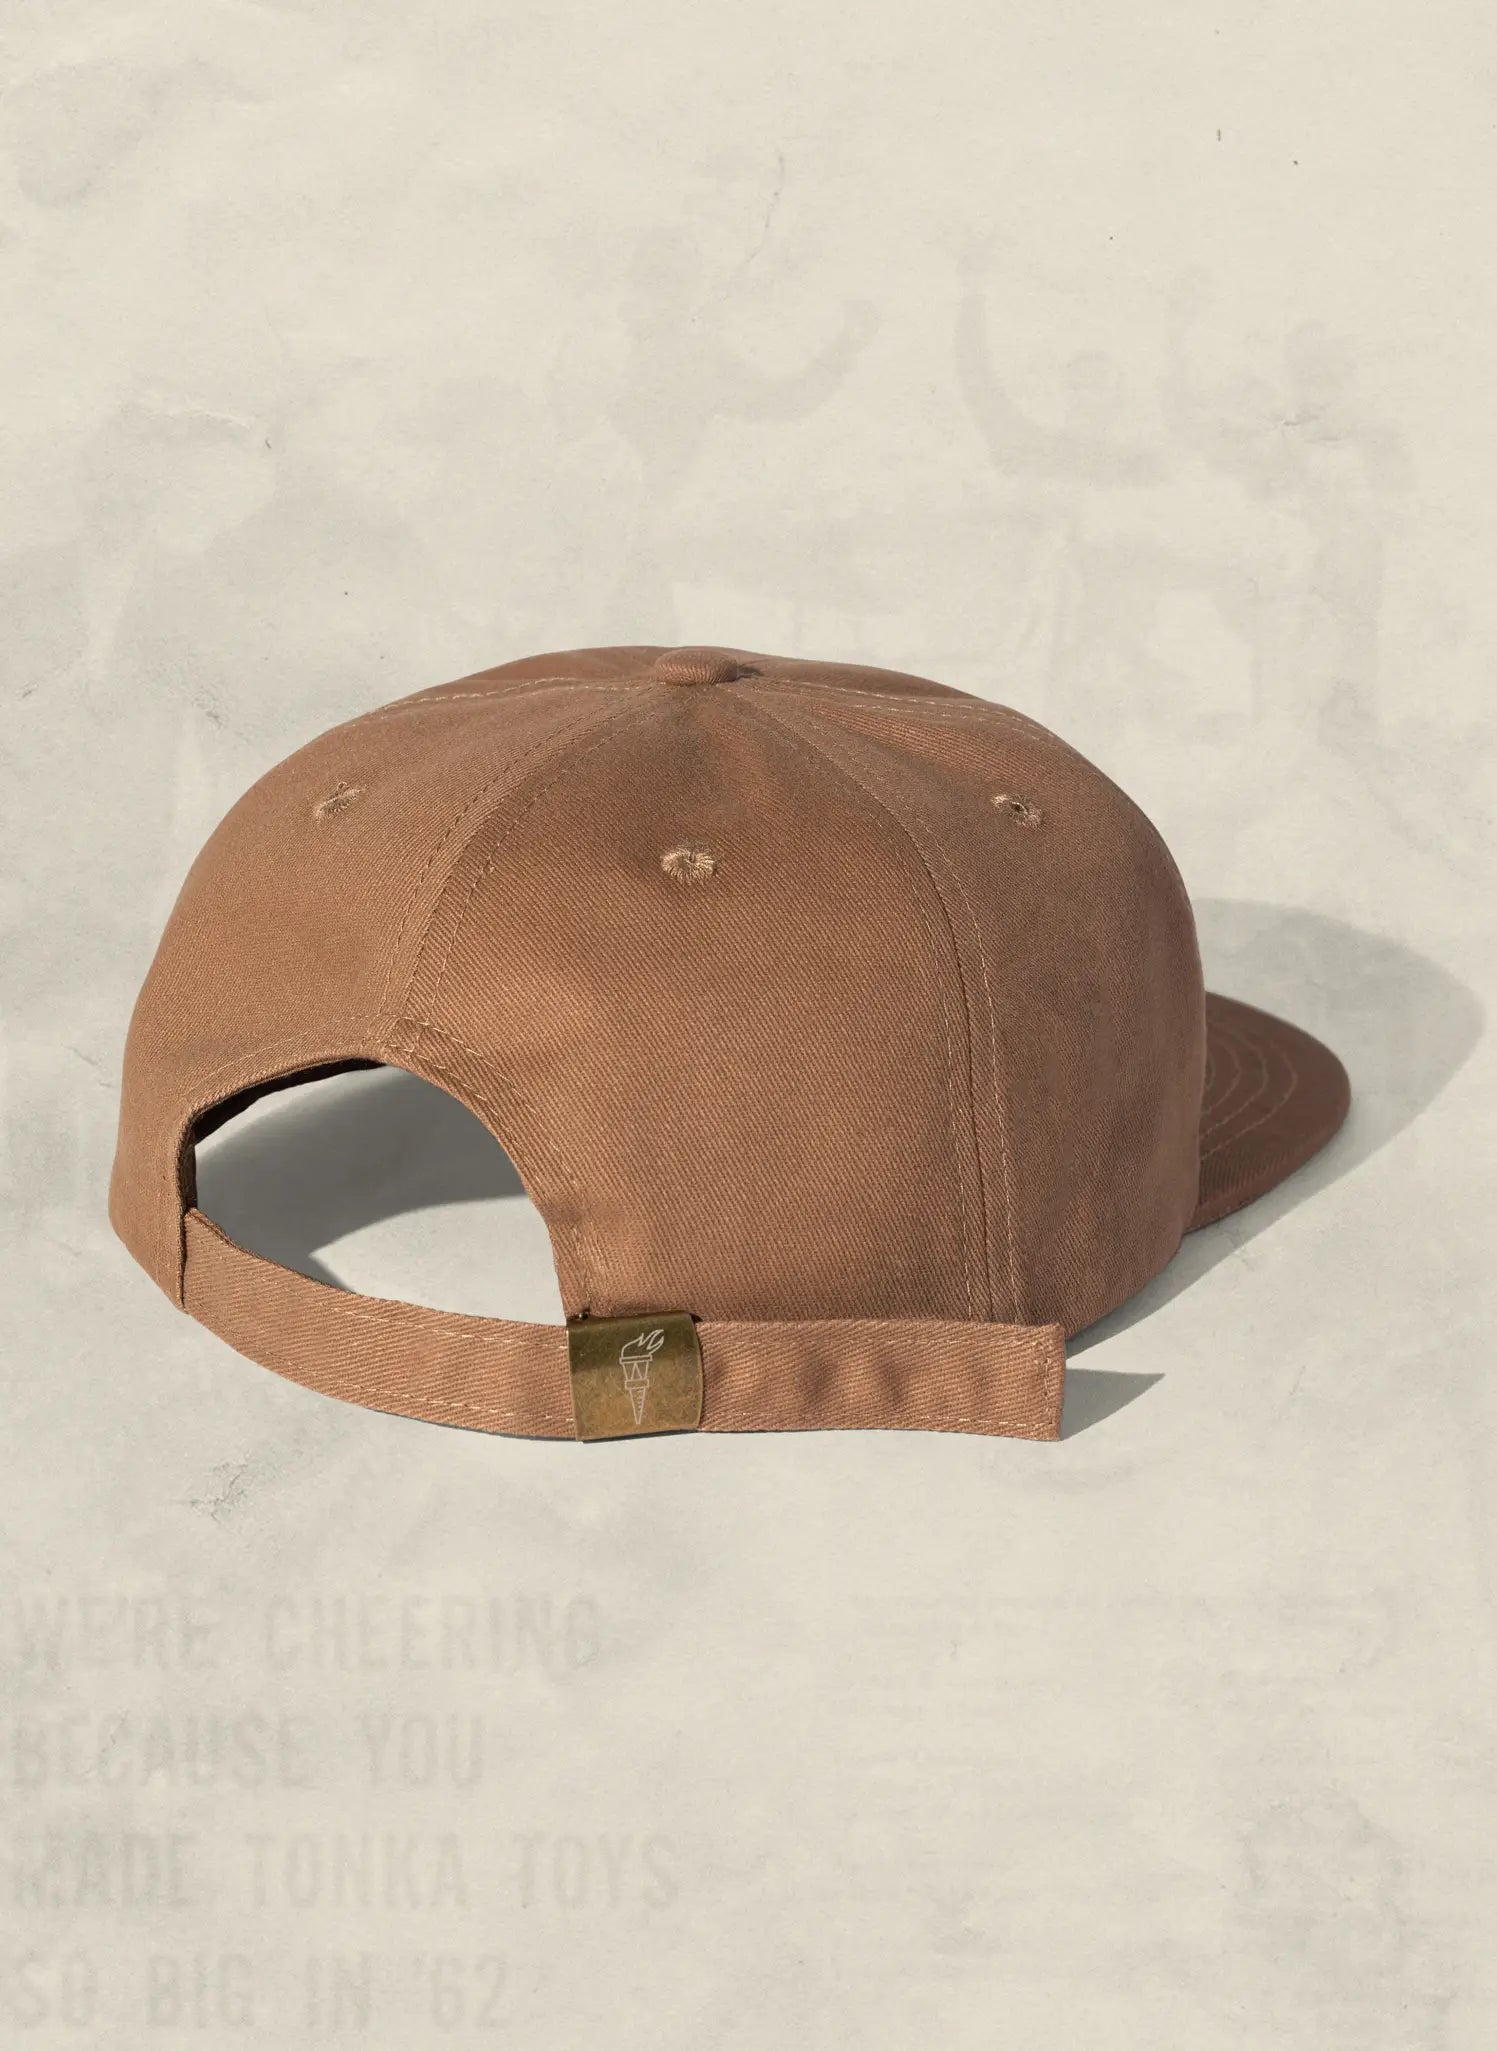 The San Diego Chainstitch Hat by Weld Mfg